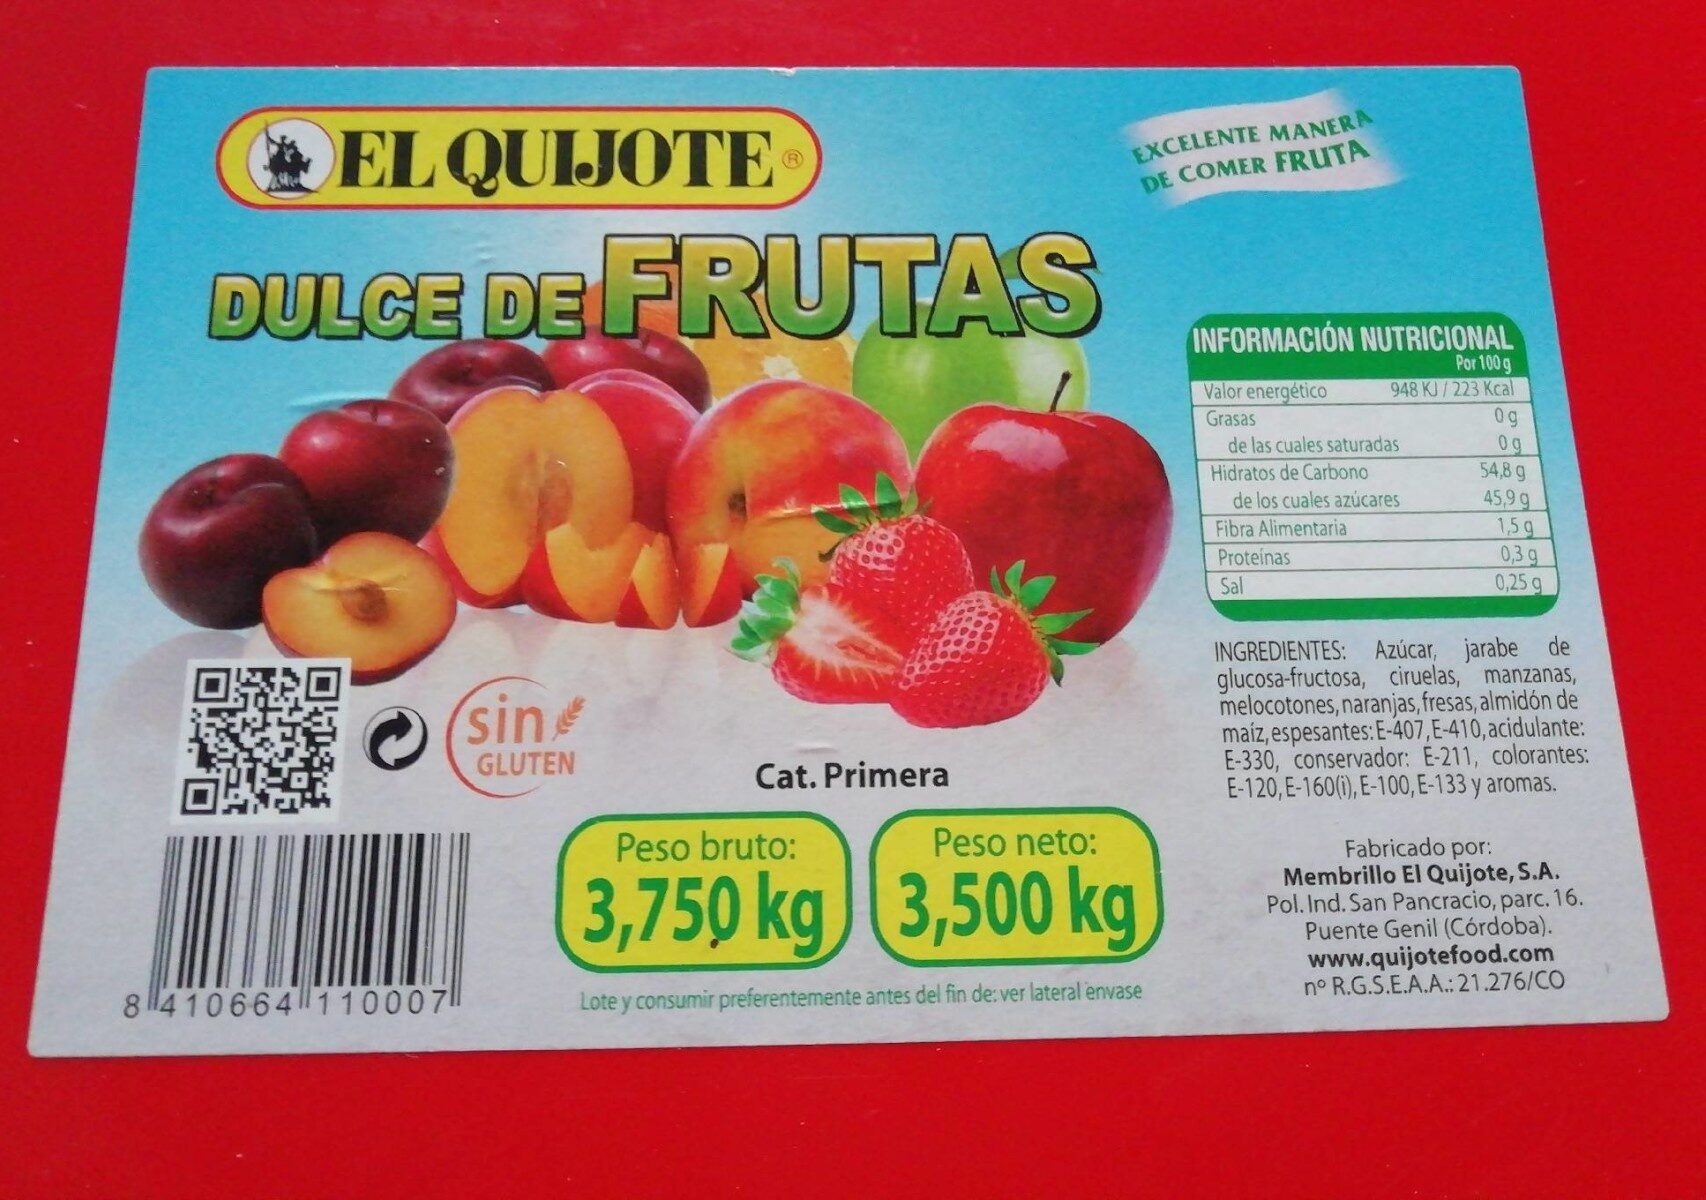 Dulce de frutas - Product - es